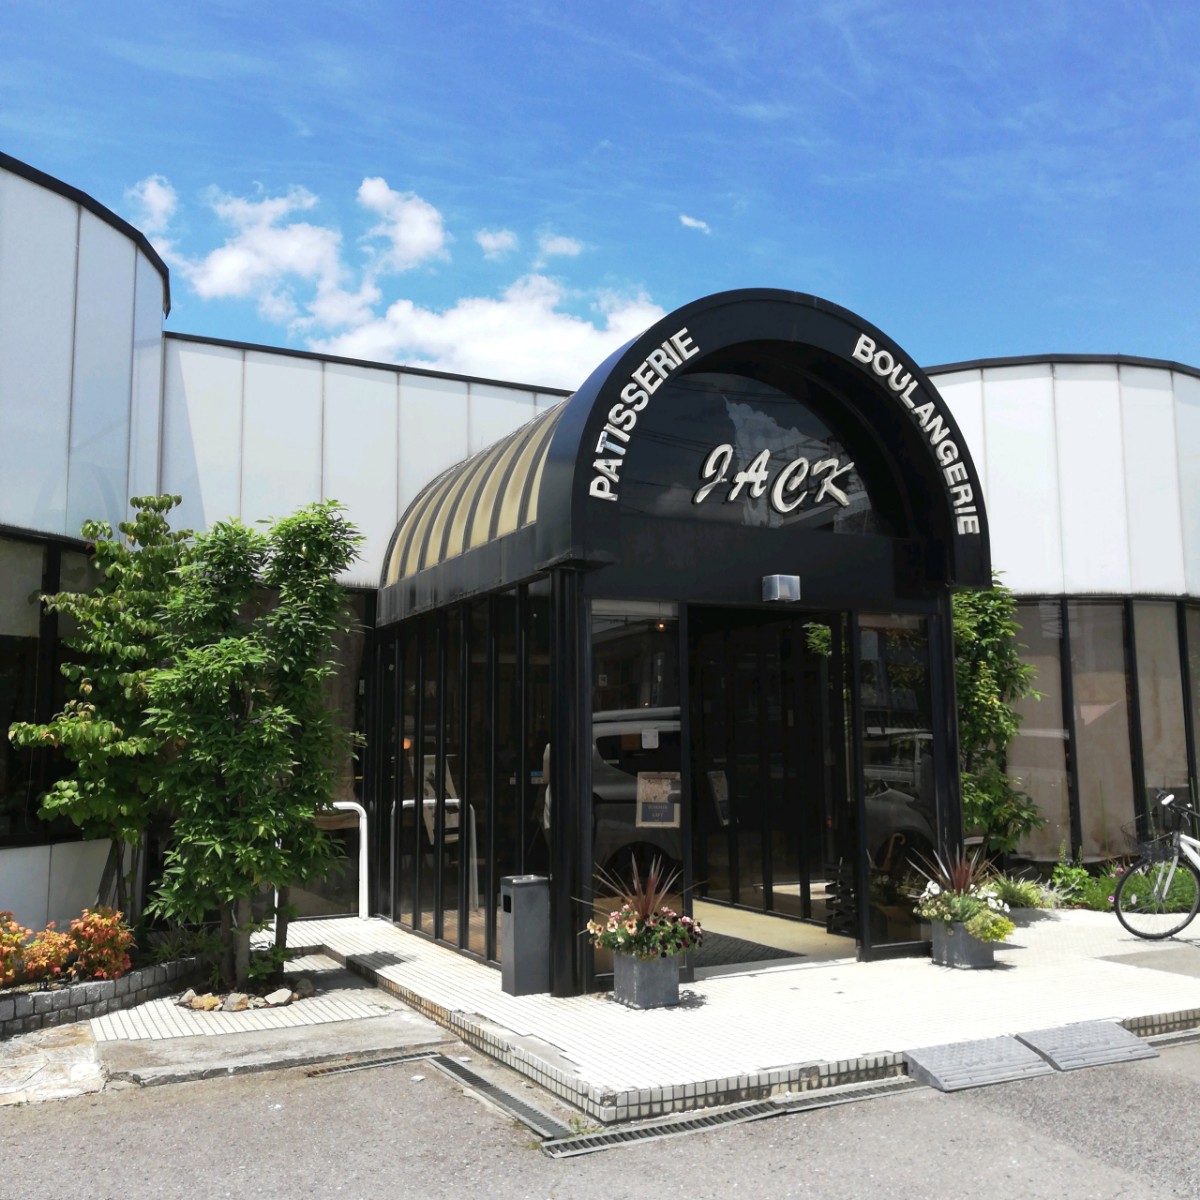 豊田のジャック 大人気の美味しいパン屋をレポします 岡崎にゅーす